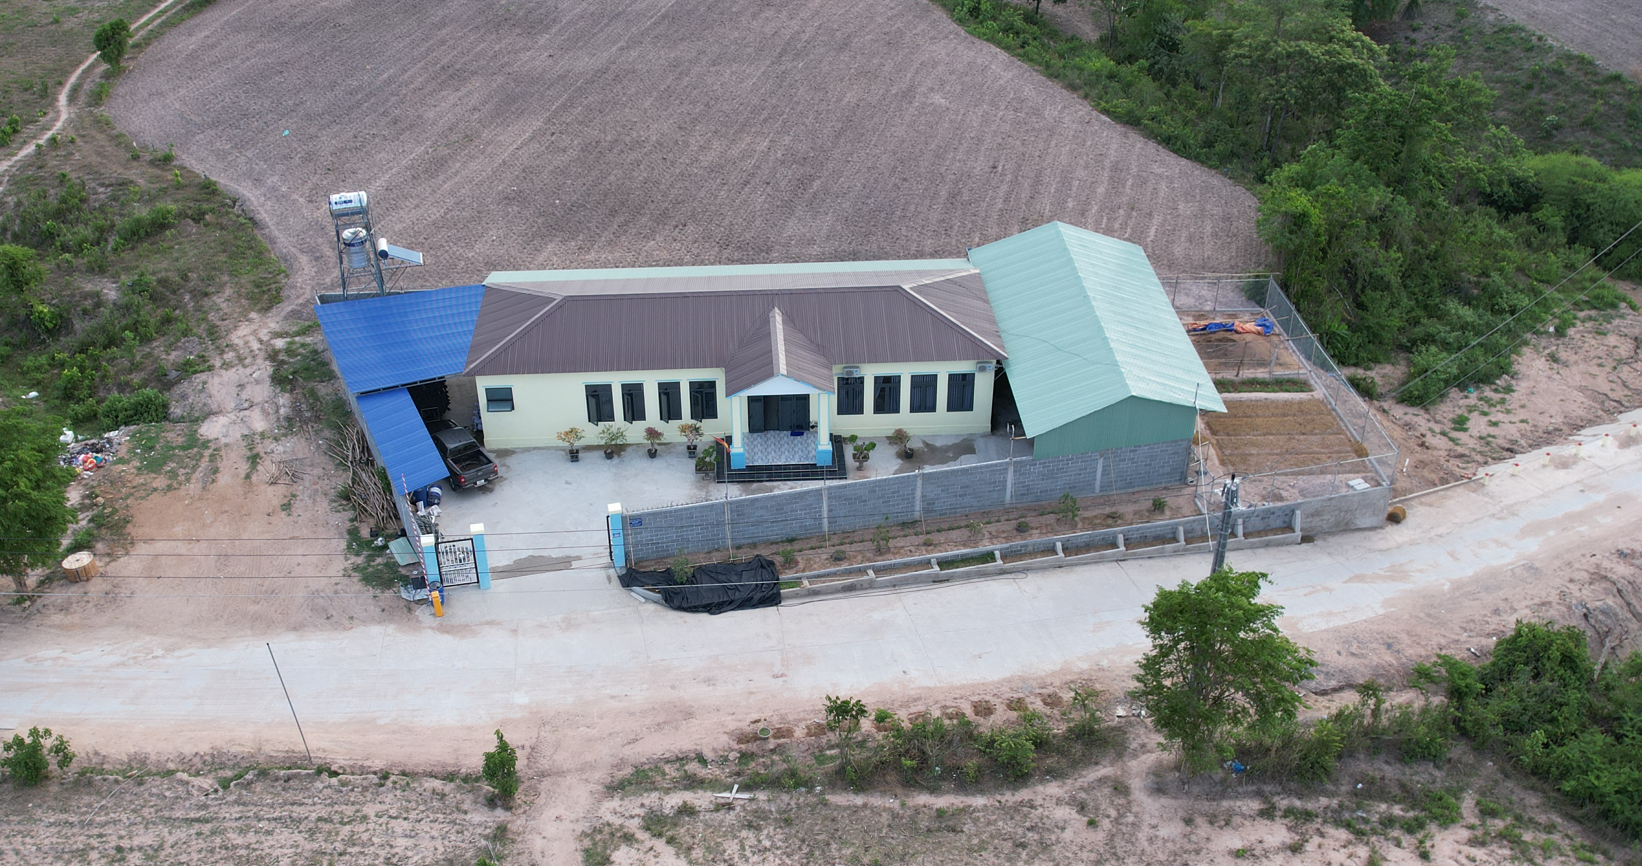 Dự án trang trại chăn nuôi heo thịt HTB tại xã Chư Drăng xây dựng nhà điều hành trên đất nông nghiệp